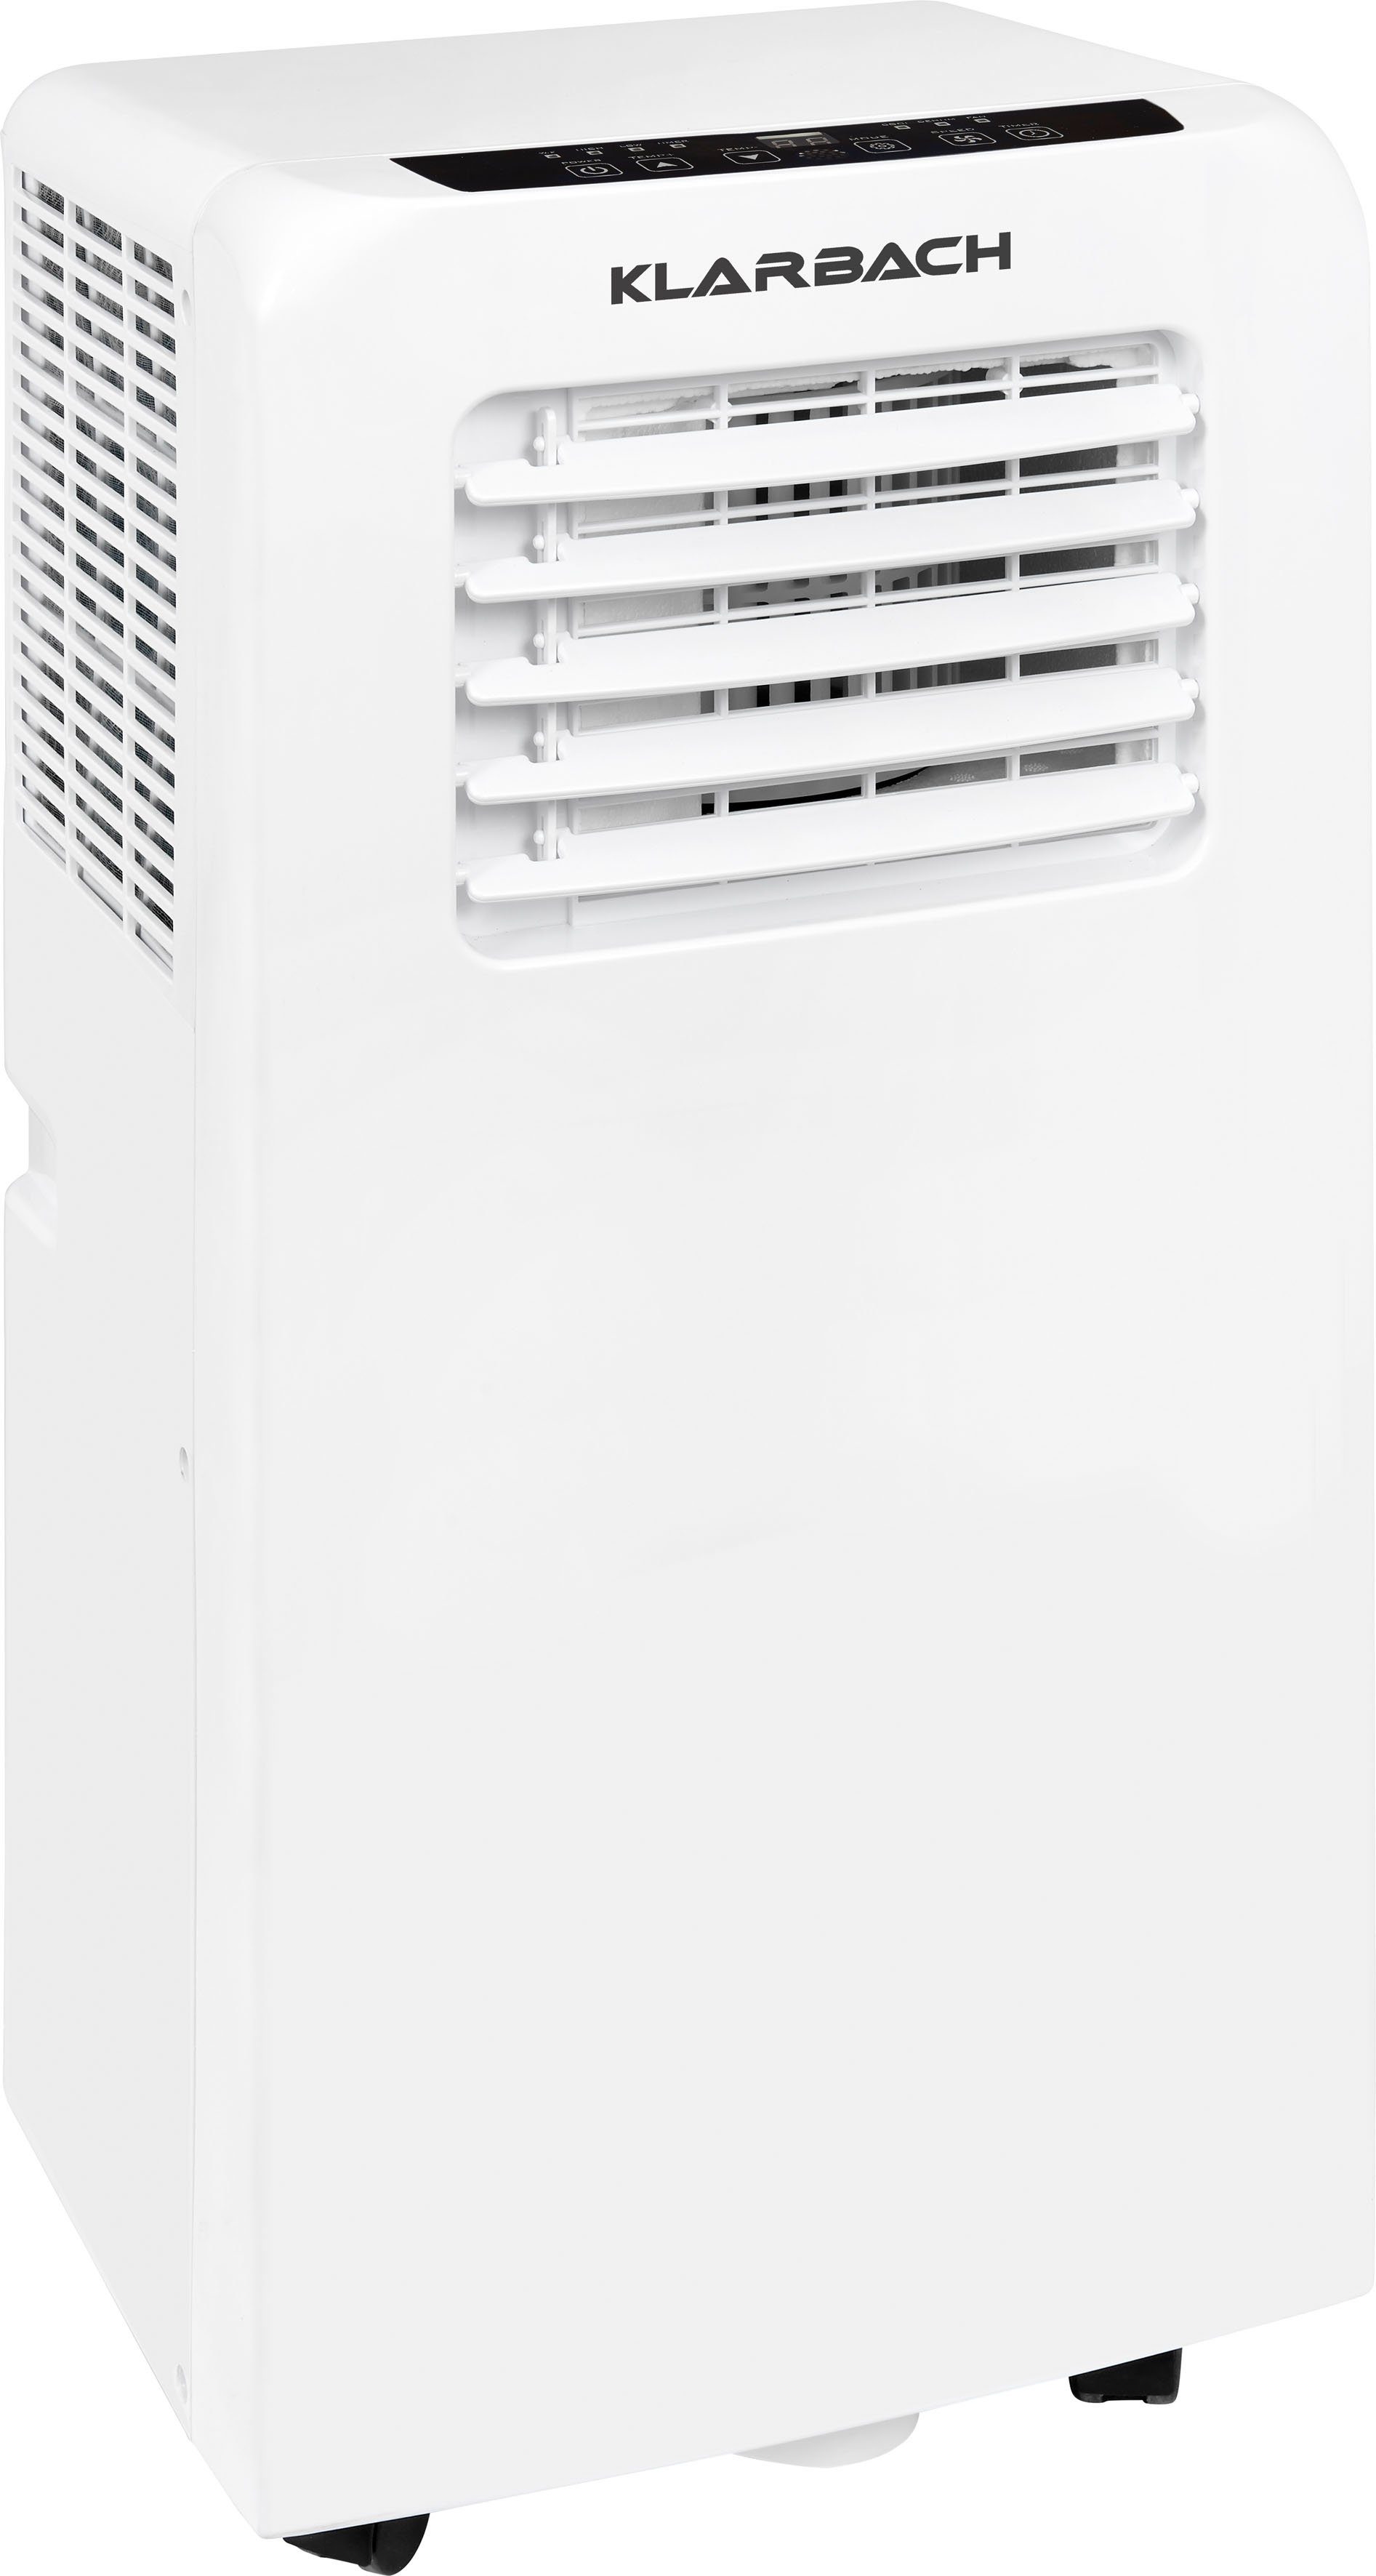 KLARBACH 3-in-1-Klimagerät CM 30751 we, Luftkühlung, Entfeuchtung, Ventilation, geeignet für 20m² Räume